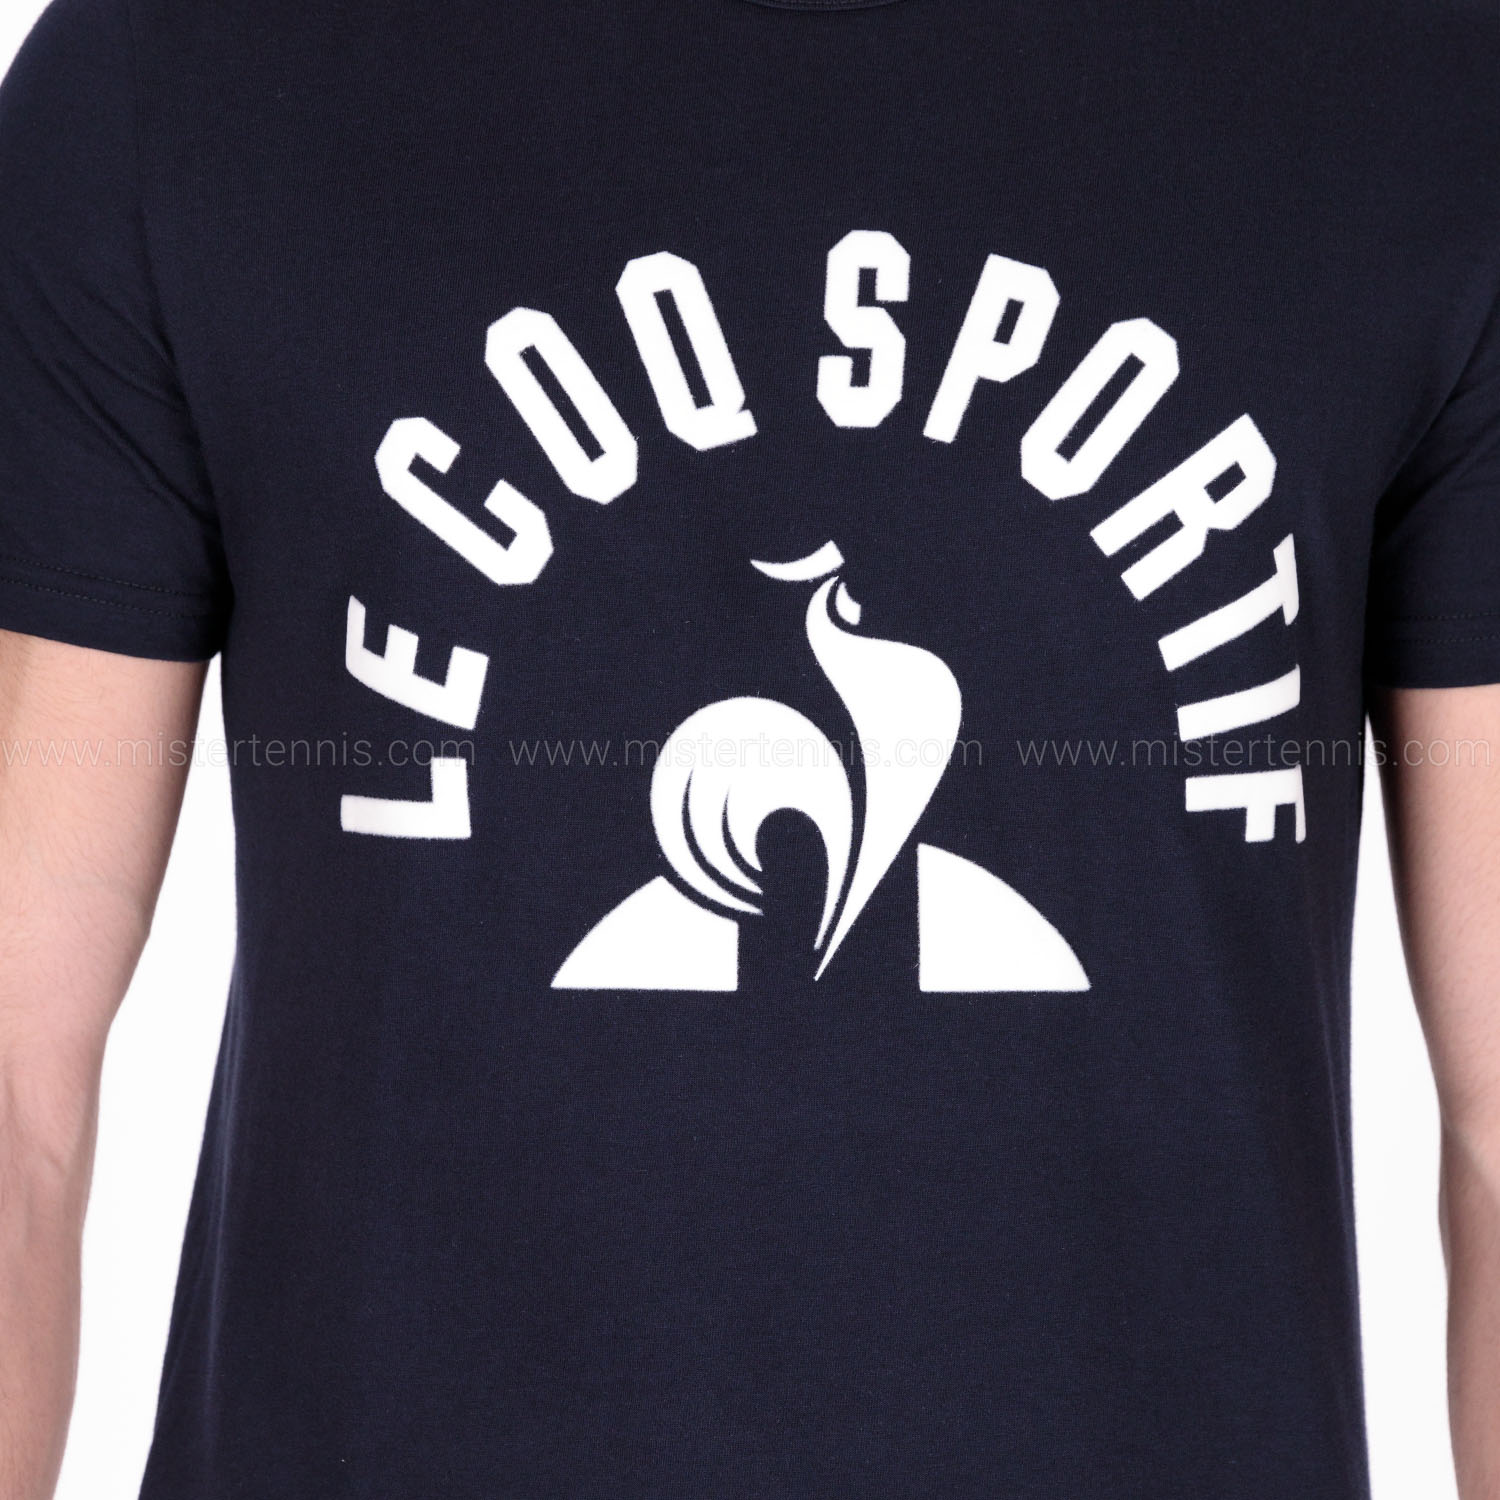 Le Coq Sportif Graphic Men's Tennis T-Shirt - Sky Captain